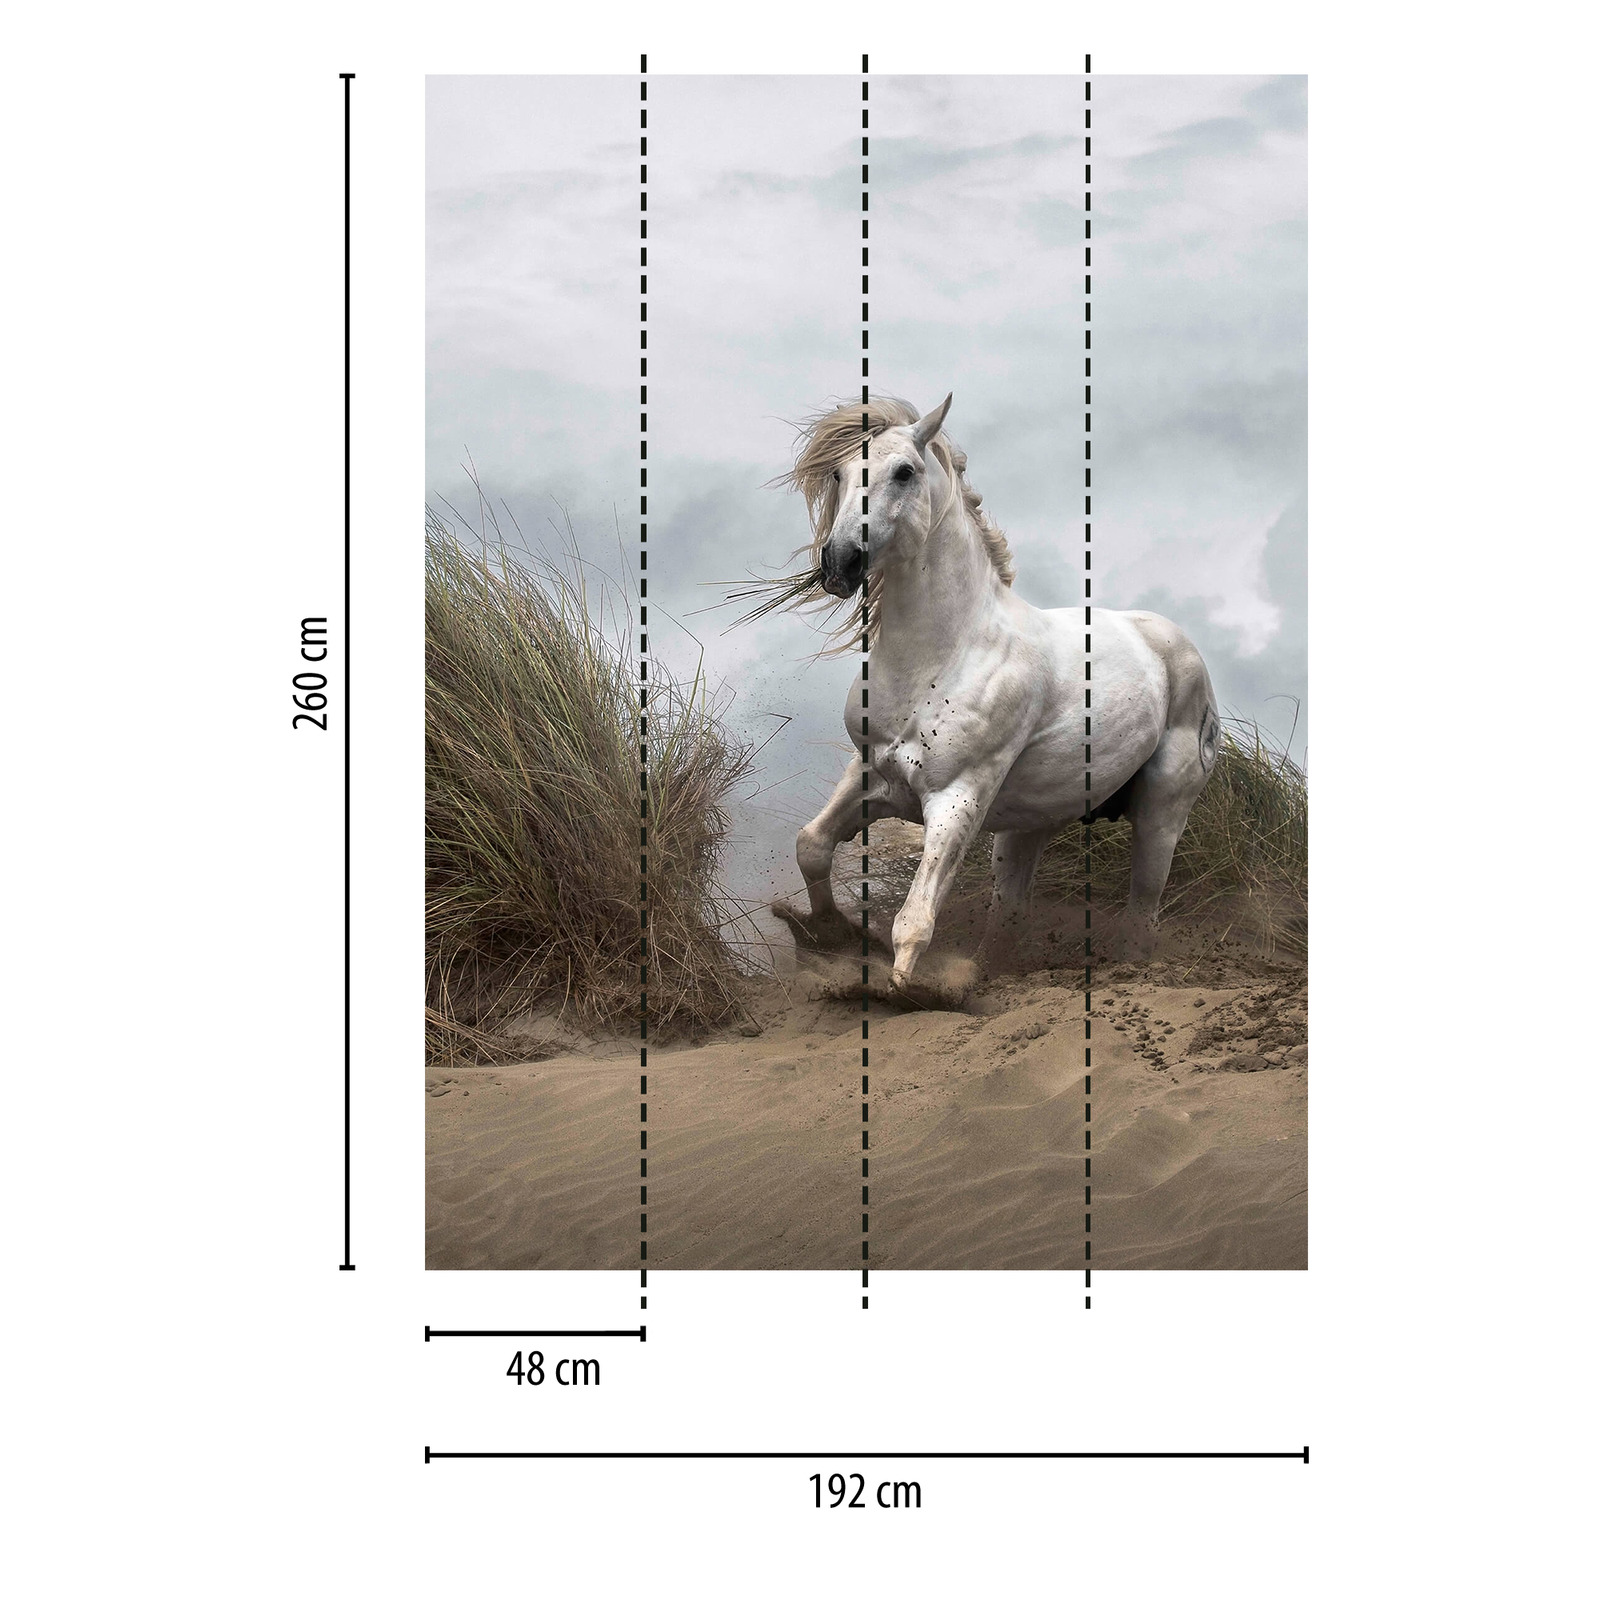             Fototapete Strand Dünen mit Pferd – Weiß, Creme, Grau
        